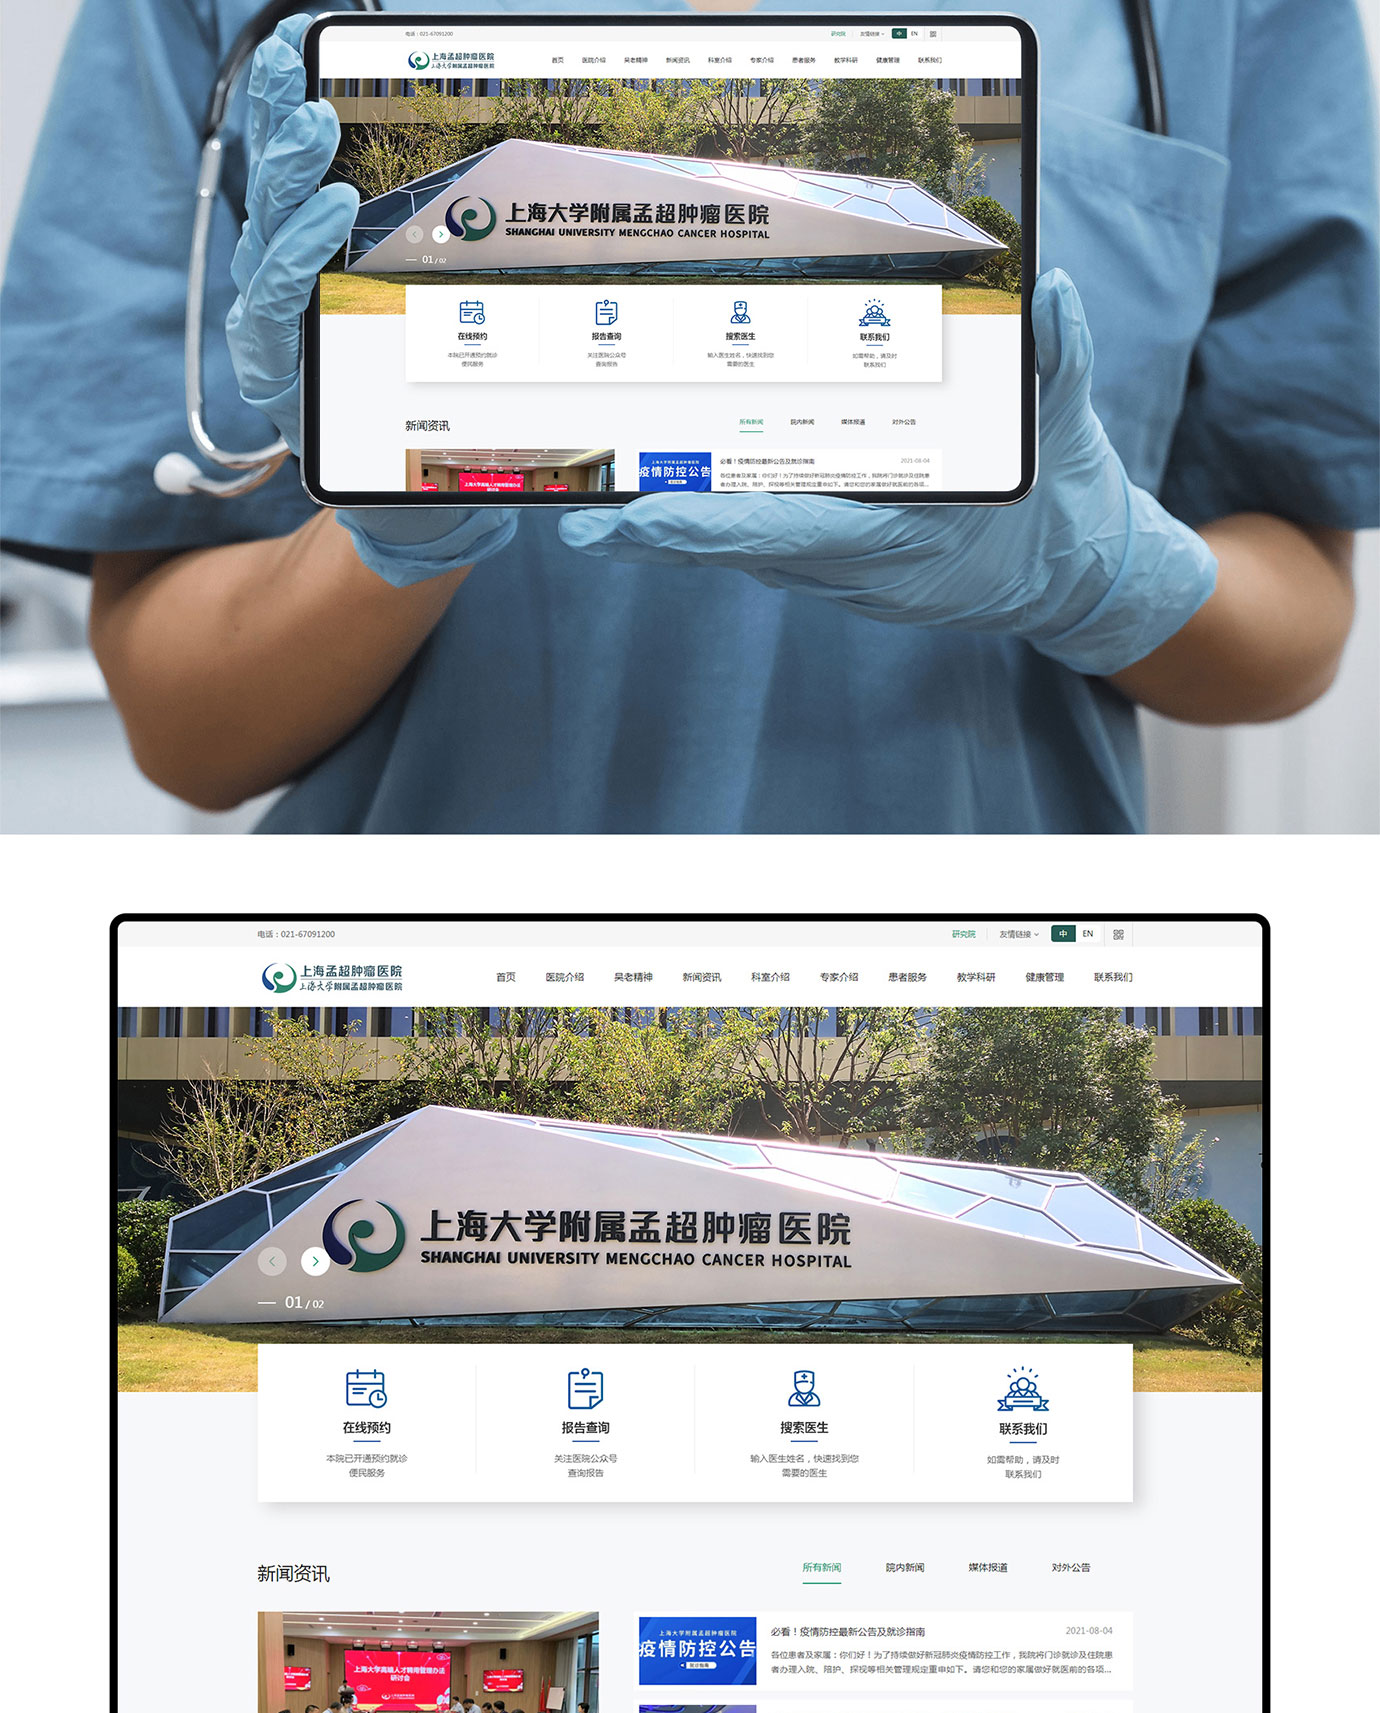 上海大学附属孟超肿瘤医院项目图片